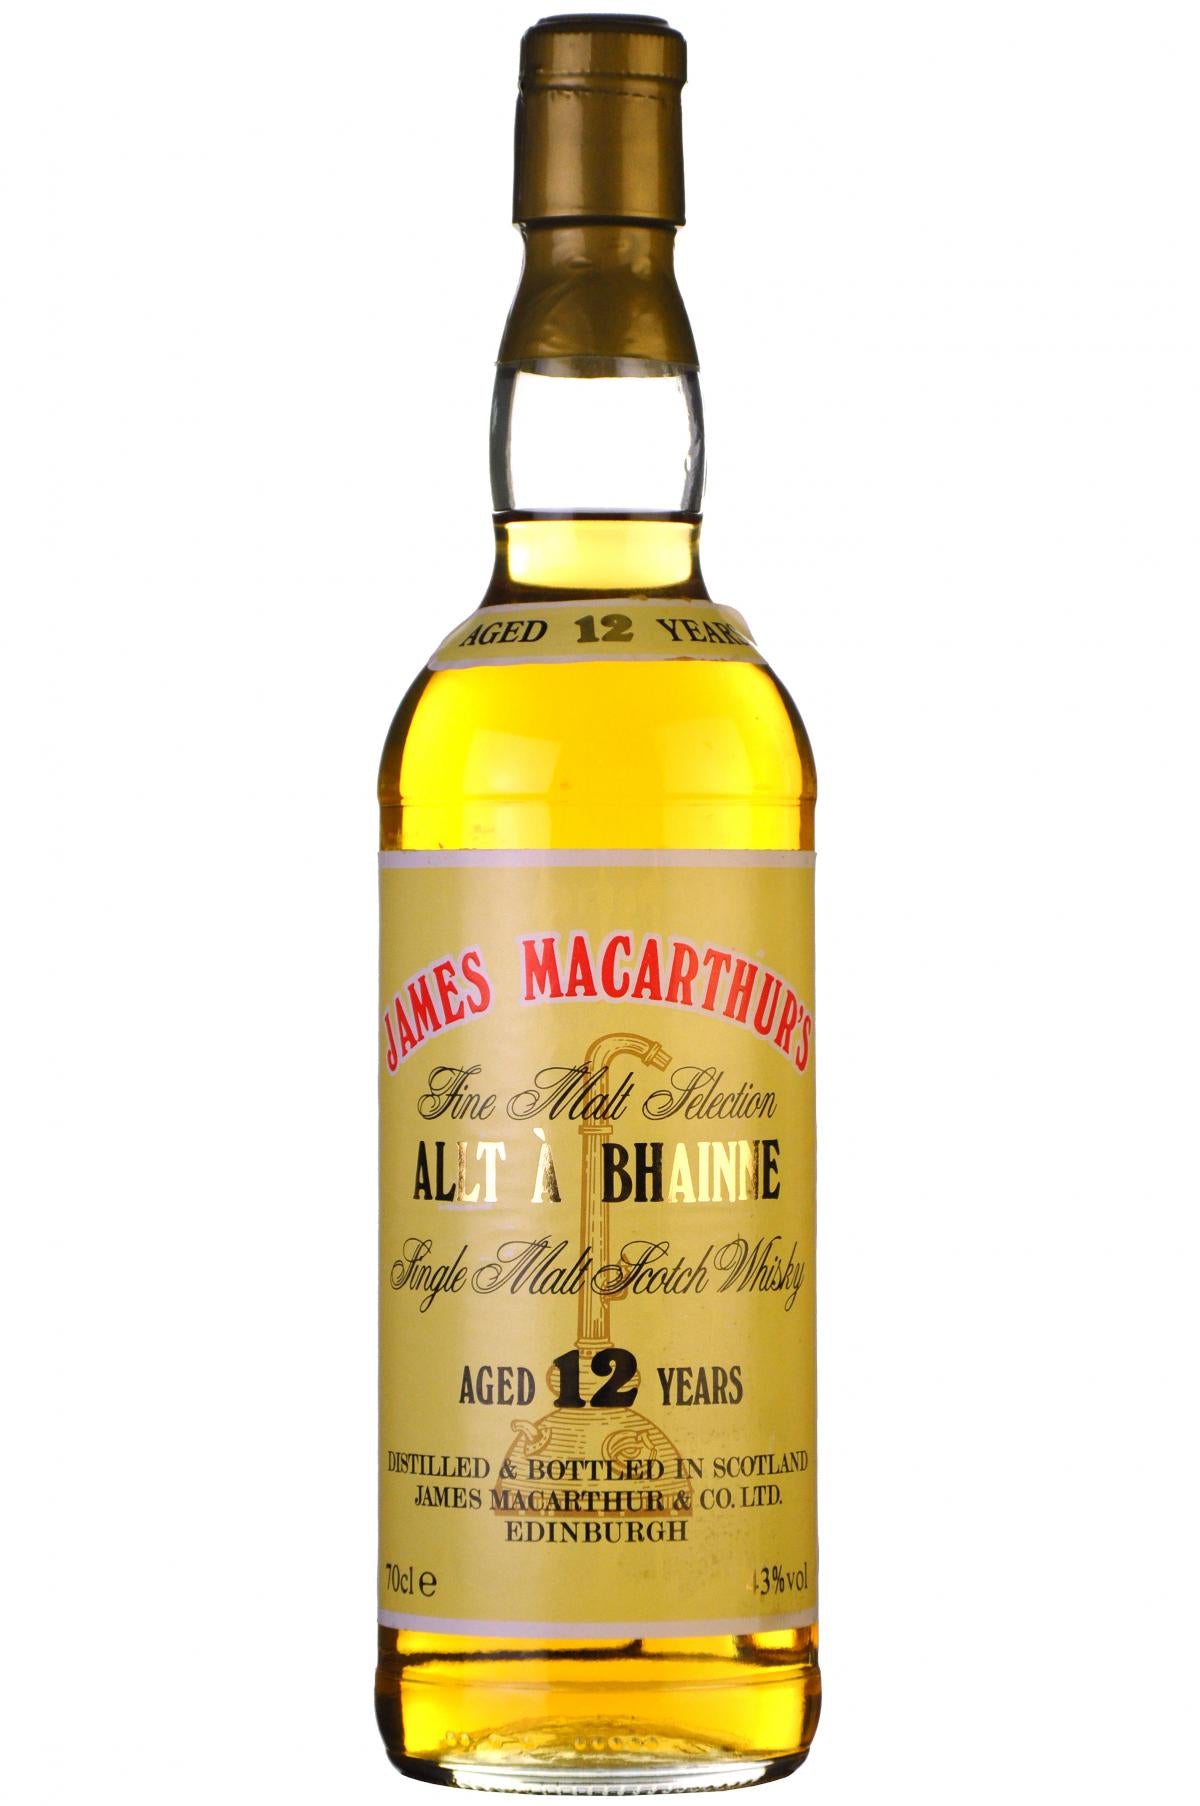 allt-a-bhainne 12 year old, james macarthurs, speyside single malt scotch whisky